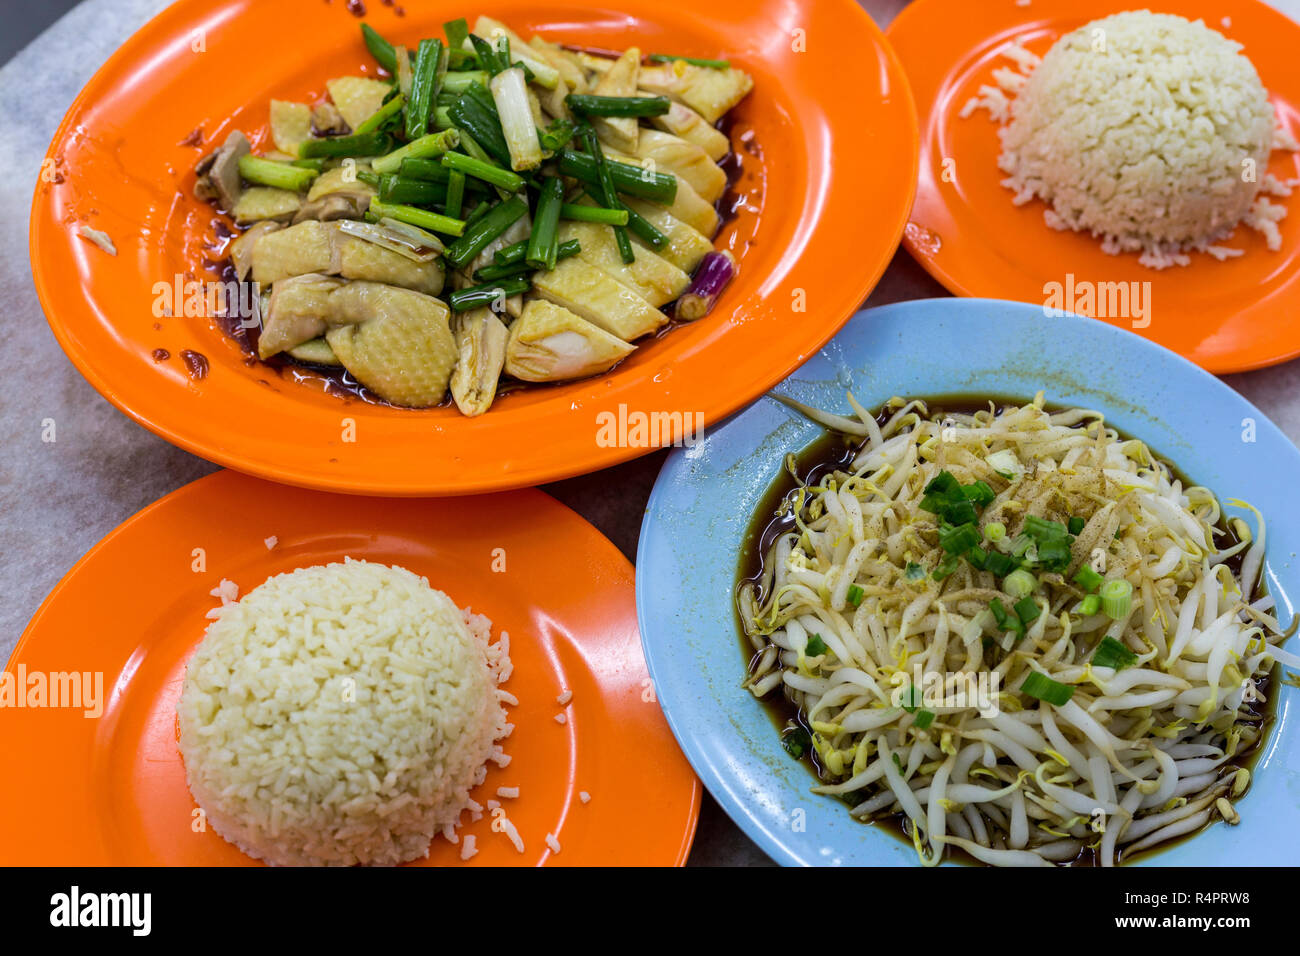 La cuisine malaisienne : poulet, riz et fèves germées, une spécialité locale. Ipoh, Malaisie. Banque D'Images